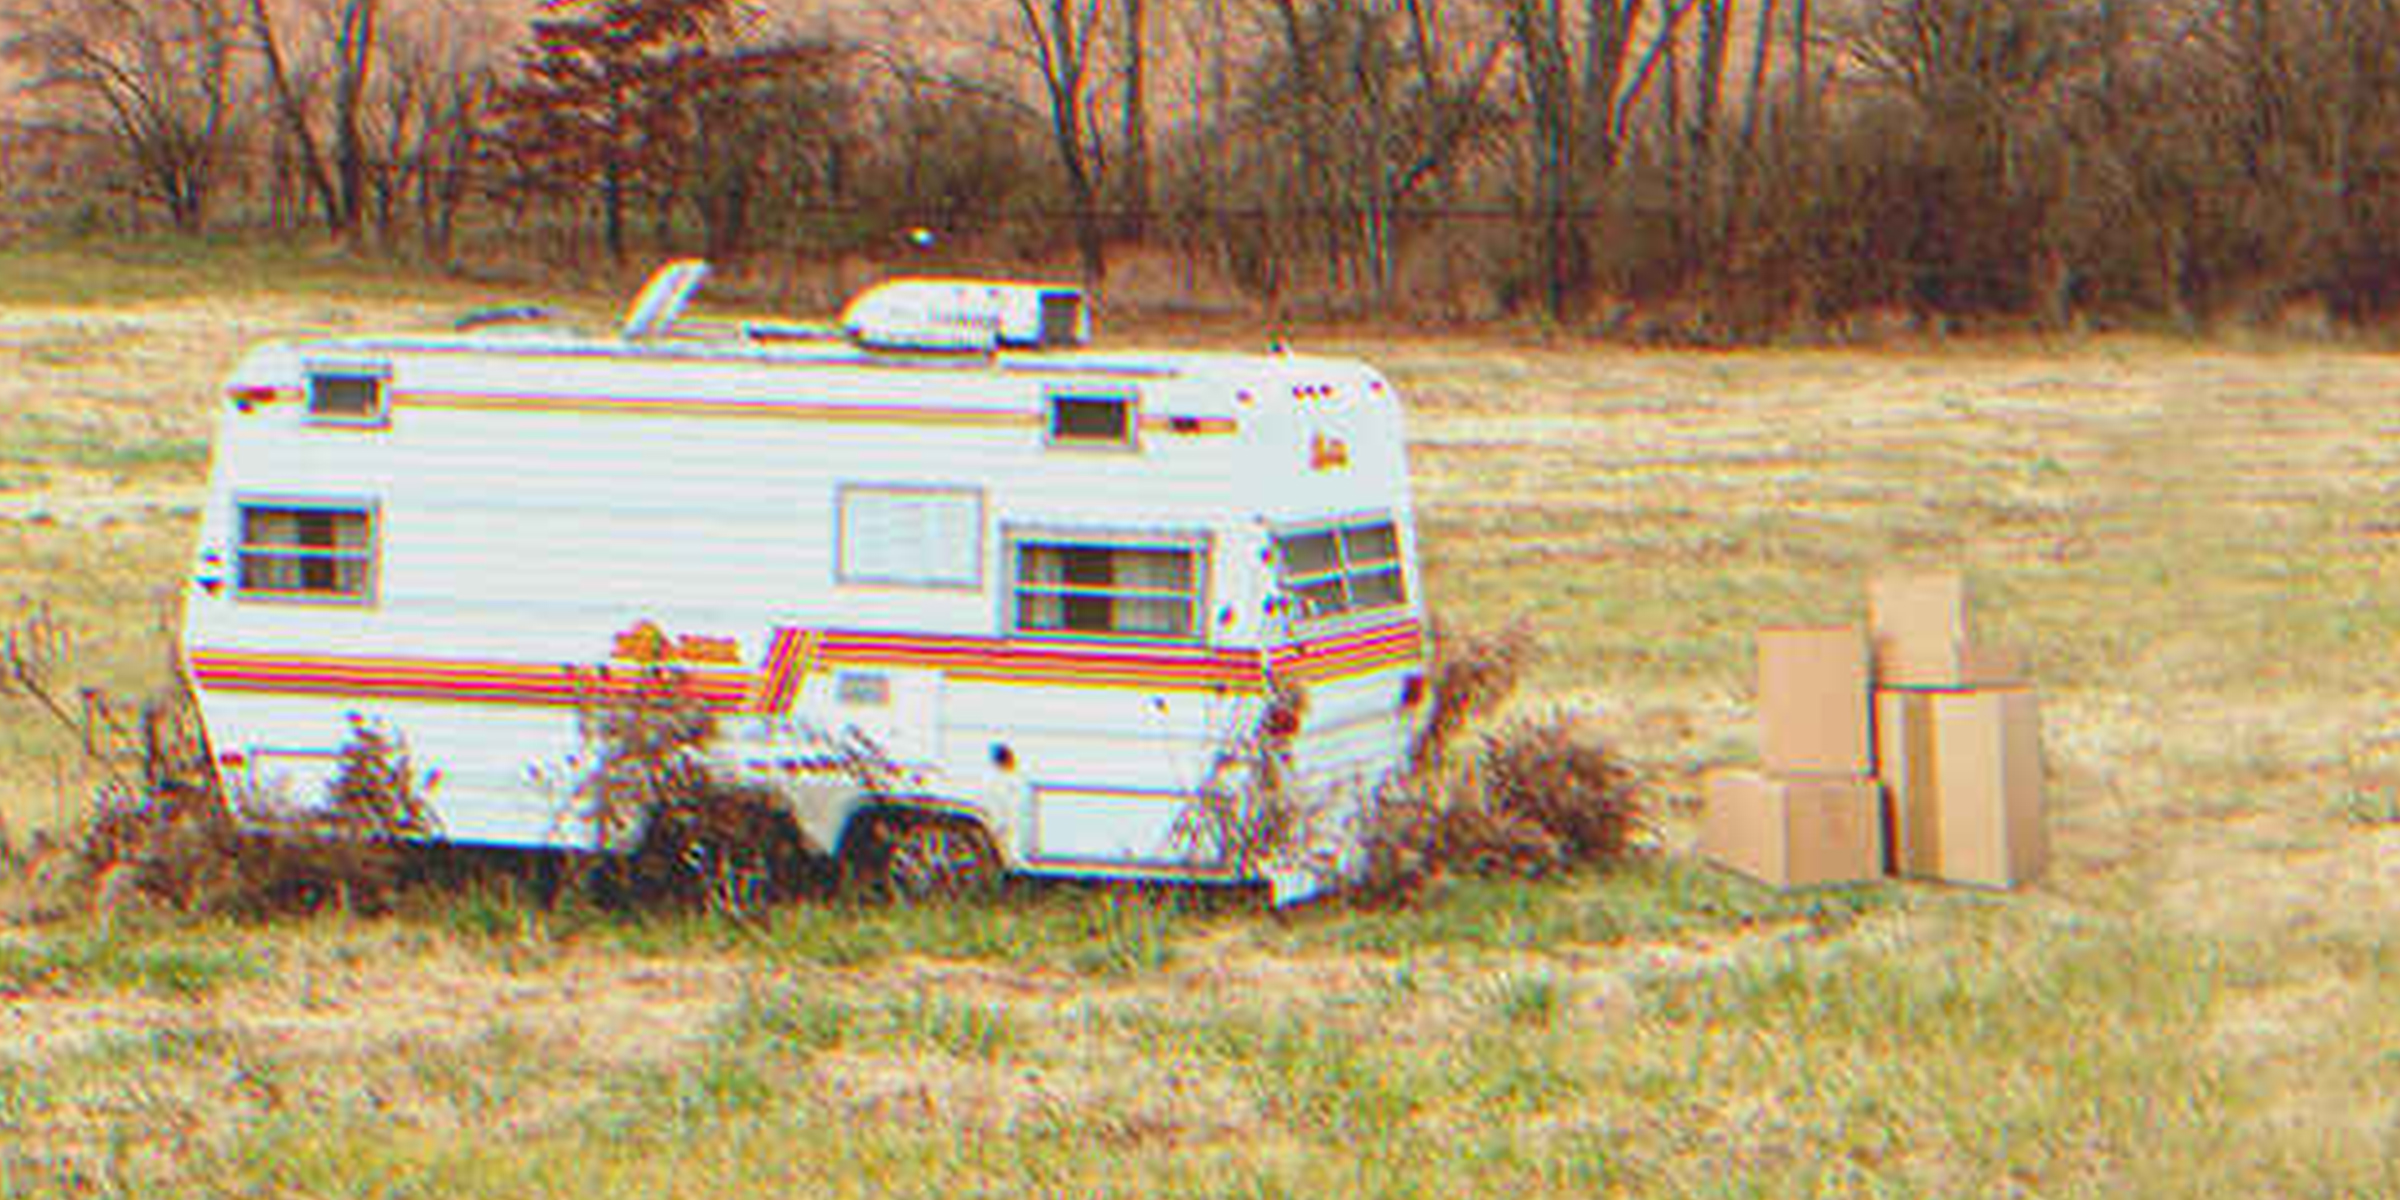 Des boîtes près d'une vieille caravane | Source : Shutterstock